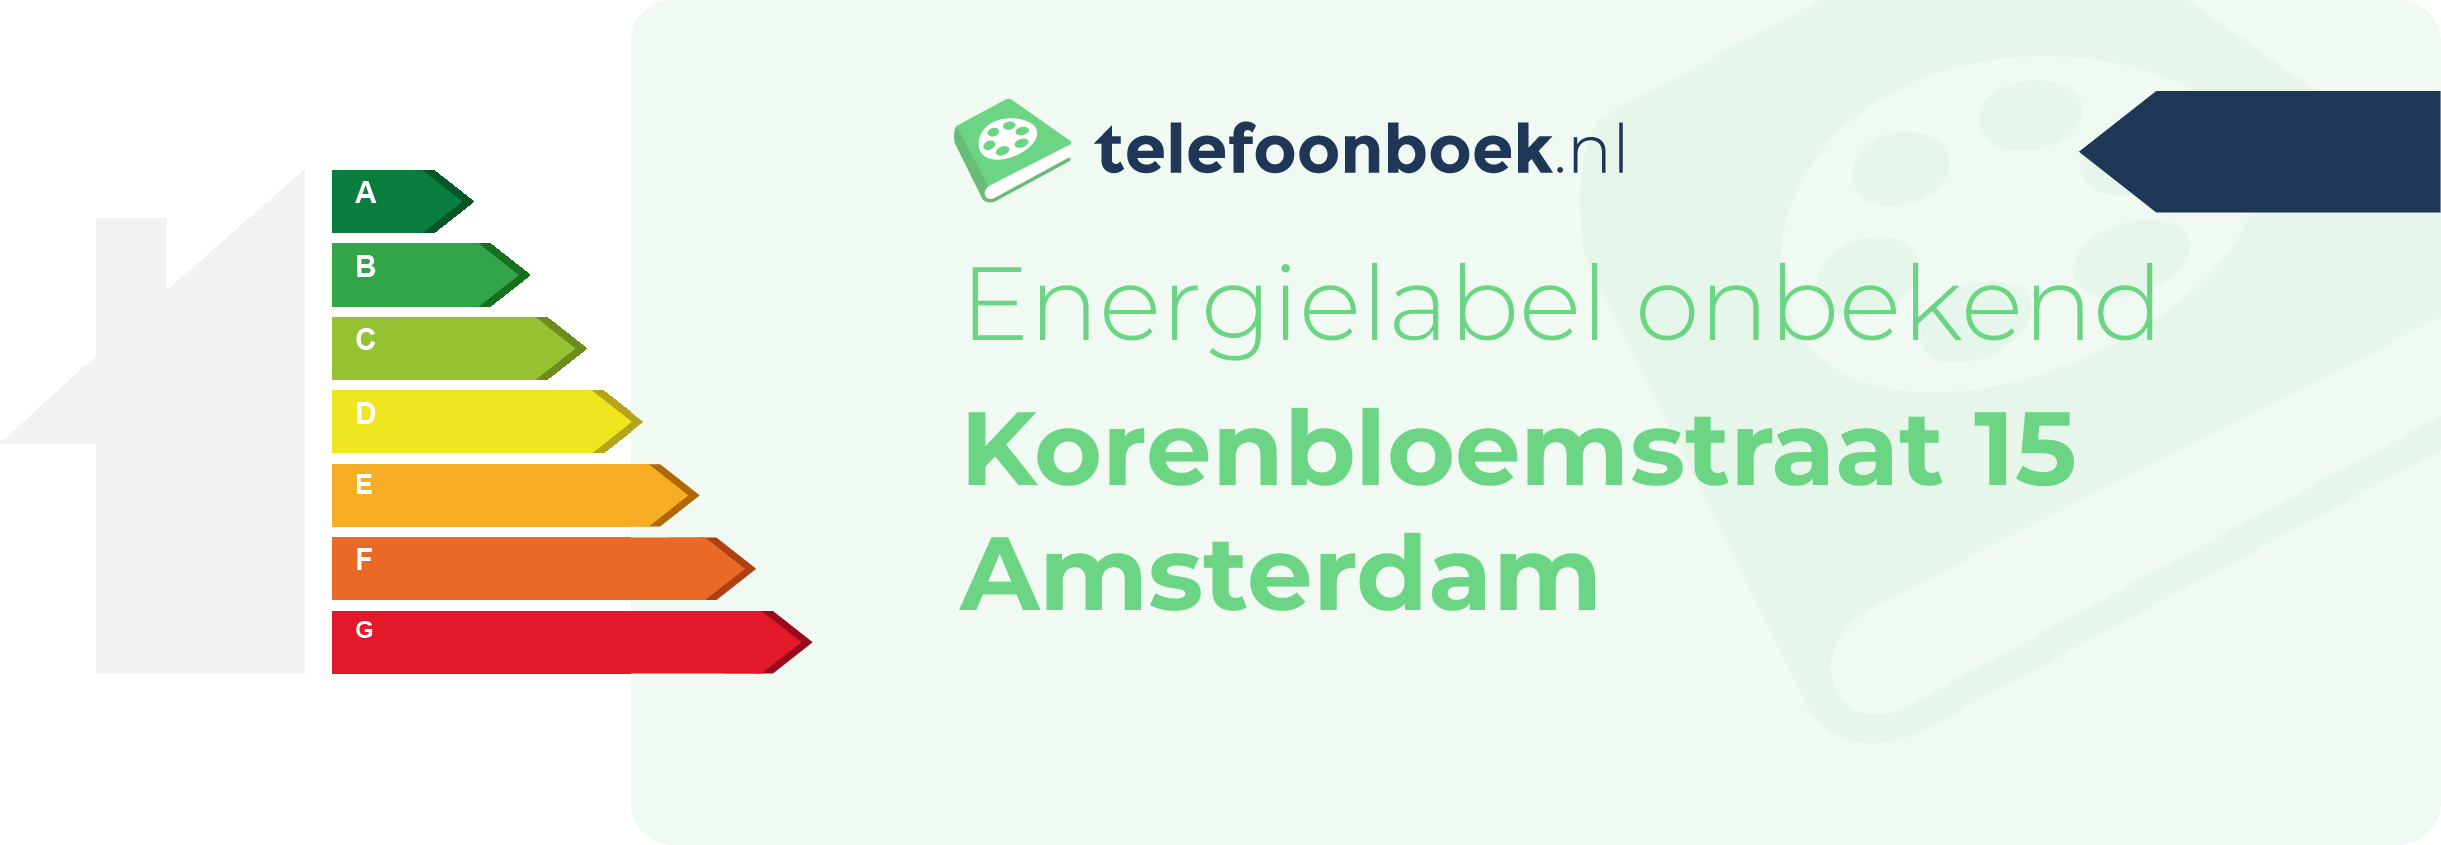 Energielabel Korenbloemstraat 15 Amsterdam